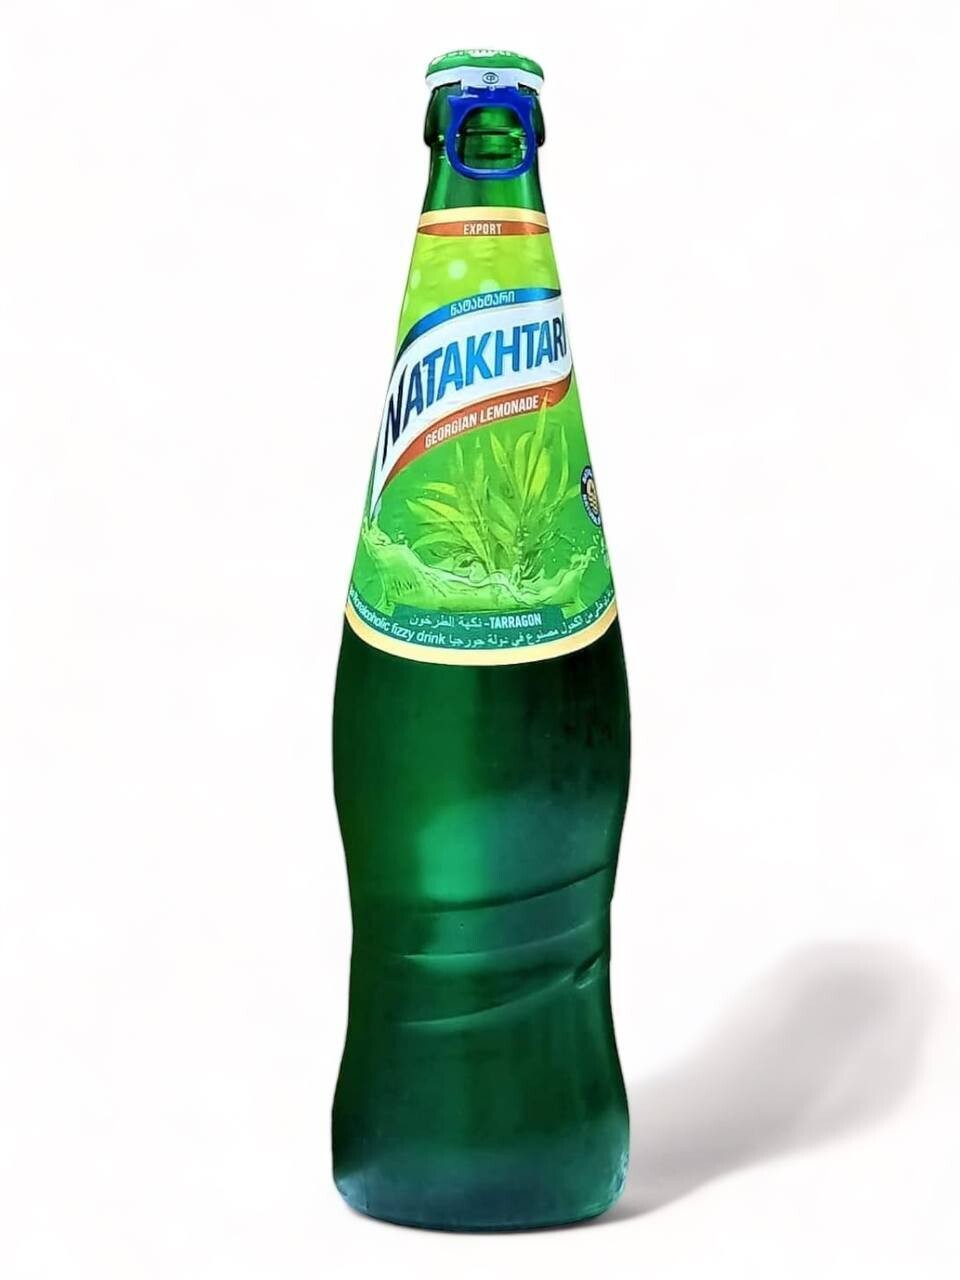 Natakhtari Georgian Lemonade With Tarragon (0.5L)